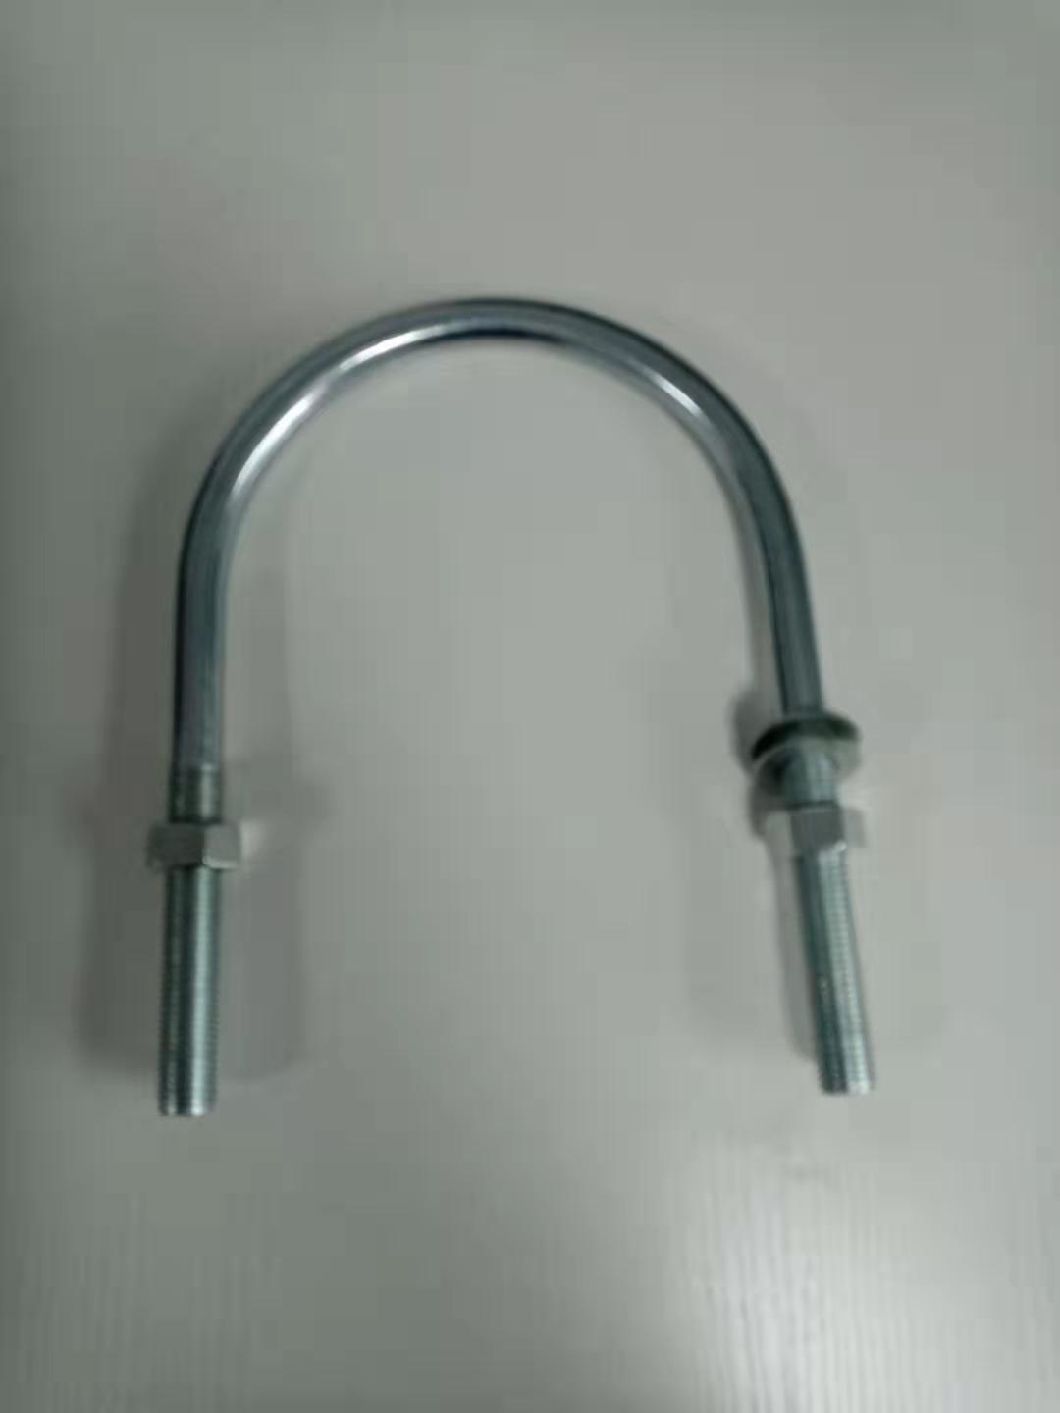 I-Stainless Steel Hoop U Type Pipe Clamp ene-Zinc-Plated